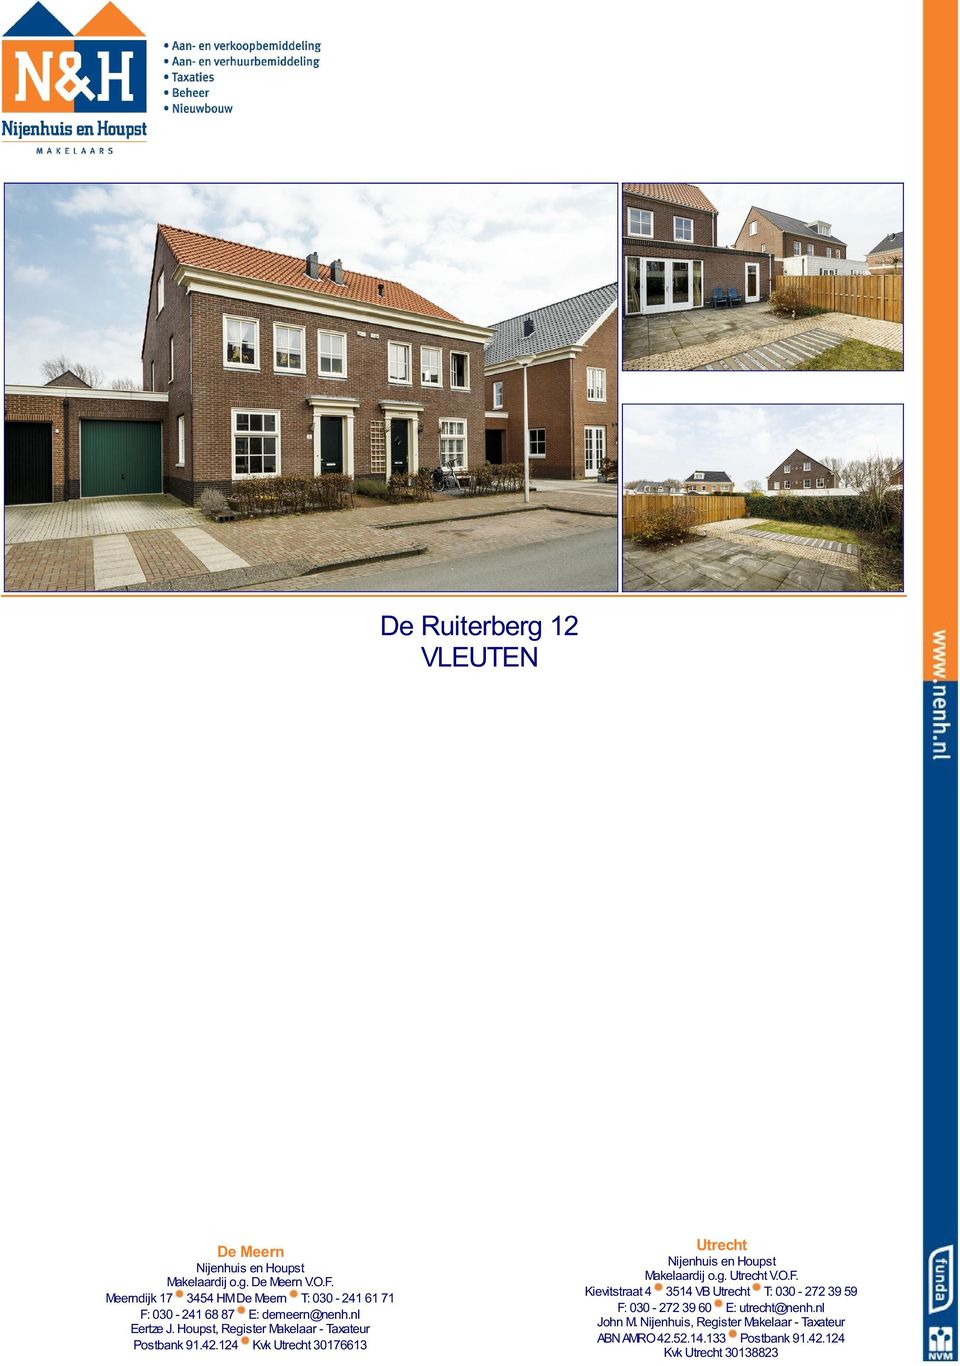 Houpst, Register Makelaar - Taxateur Postbank 91.42.124 Kvk Utrecht 30176613 Utrecht Nijenhuis en Houpst Makelaardij o.g. Utrecht V.